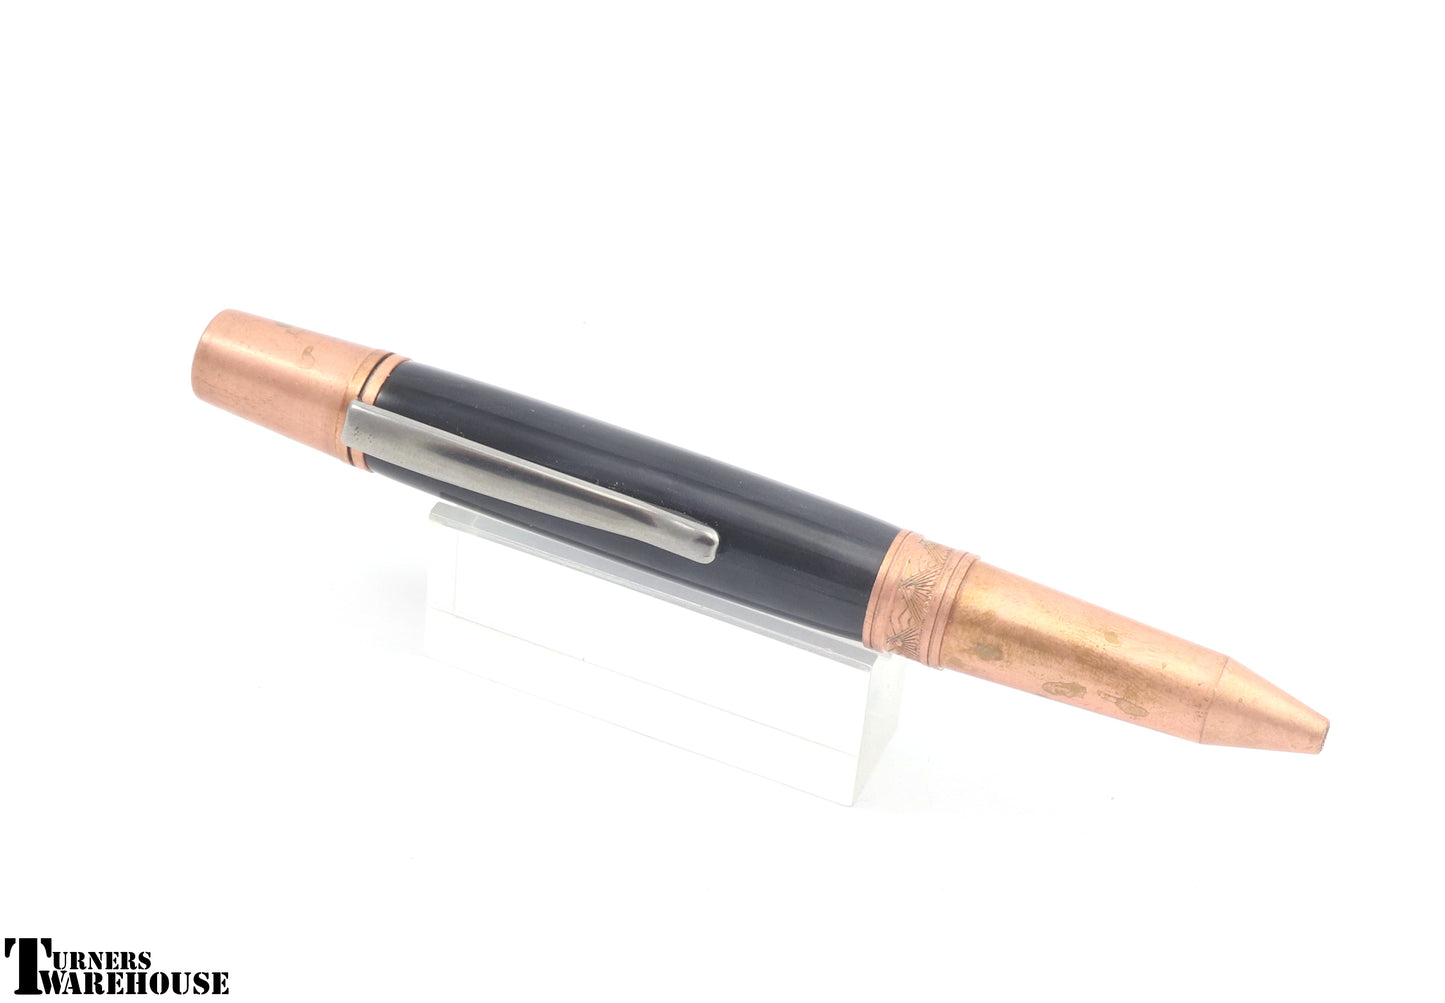  Element Series Twist Pen Kit Copper